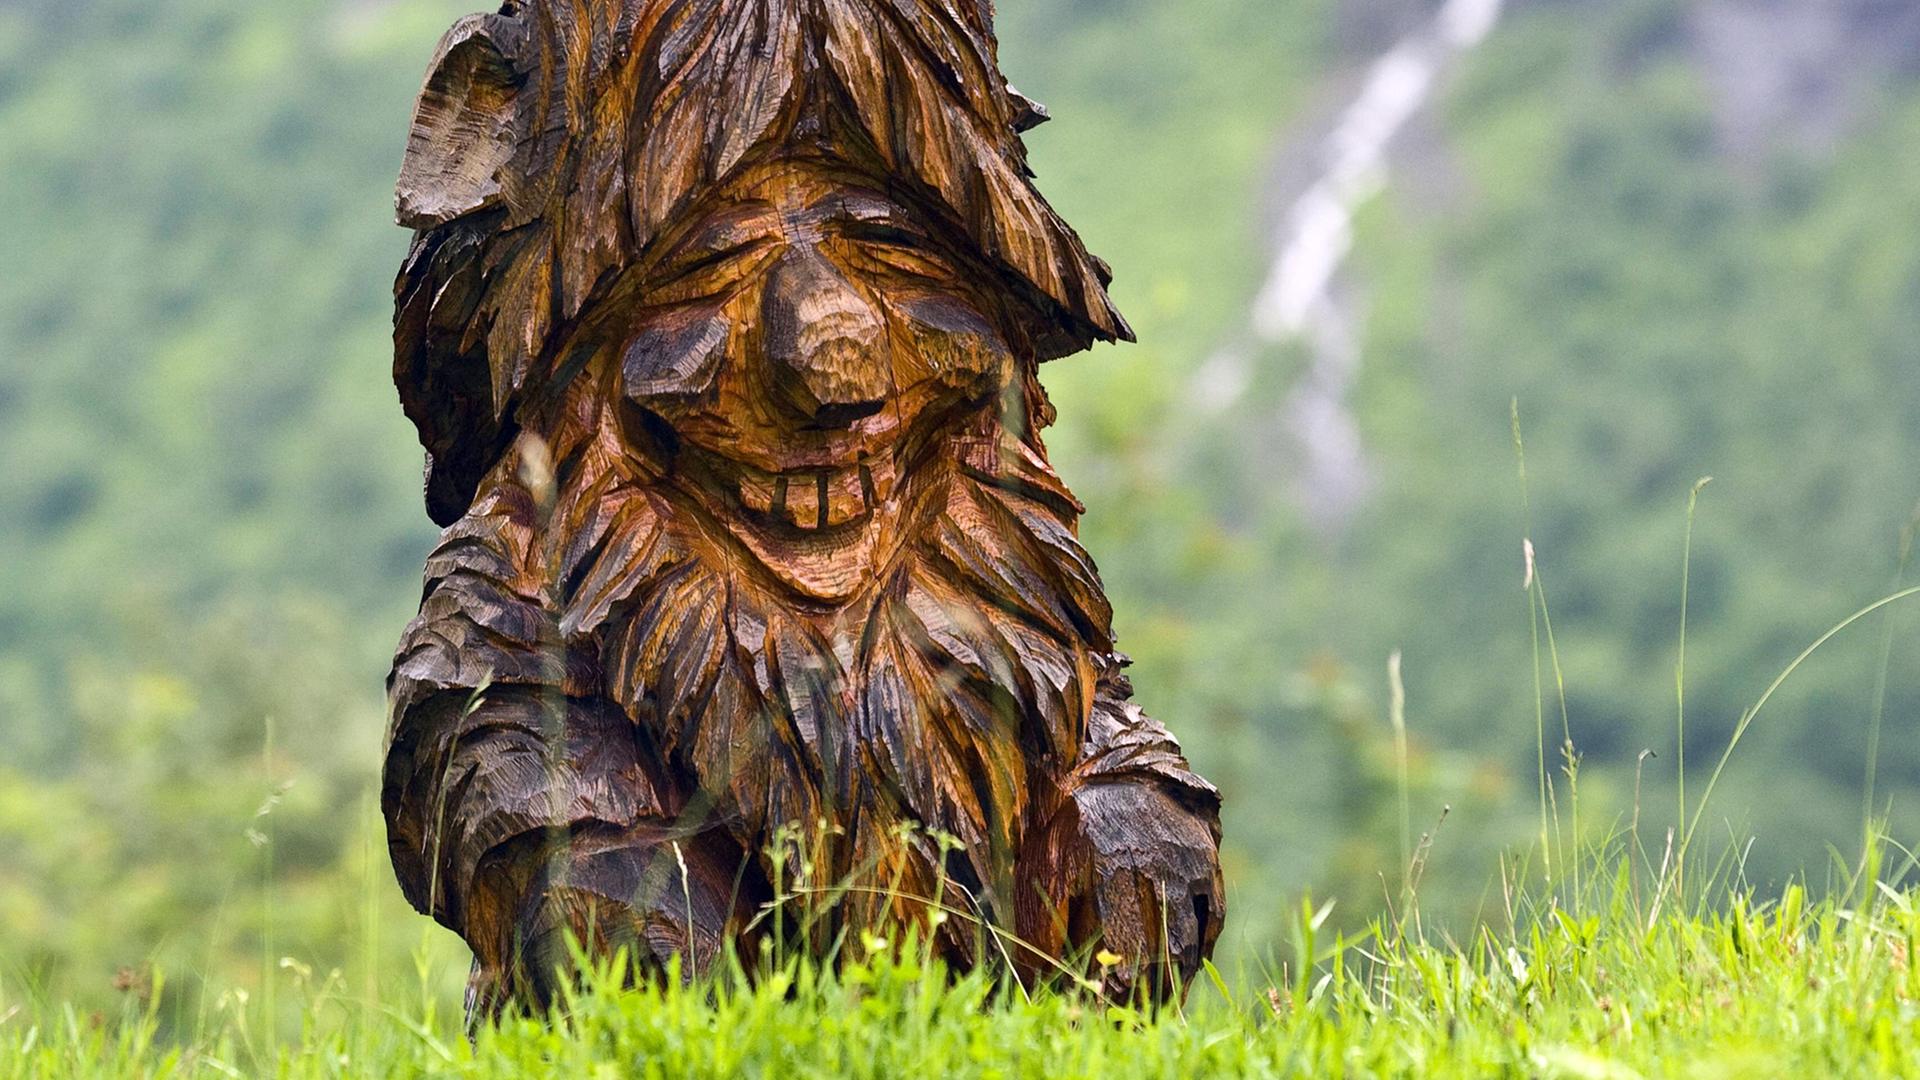 Ein aus Holz geschnitzter Troll in Norwegen auf einer Wiese.